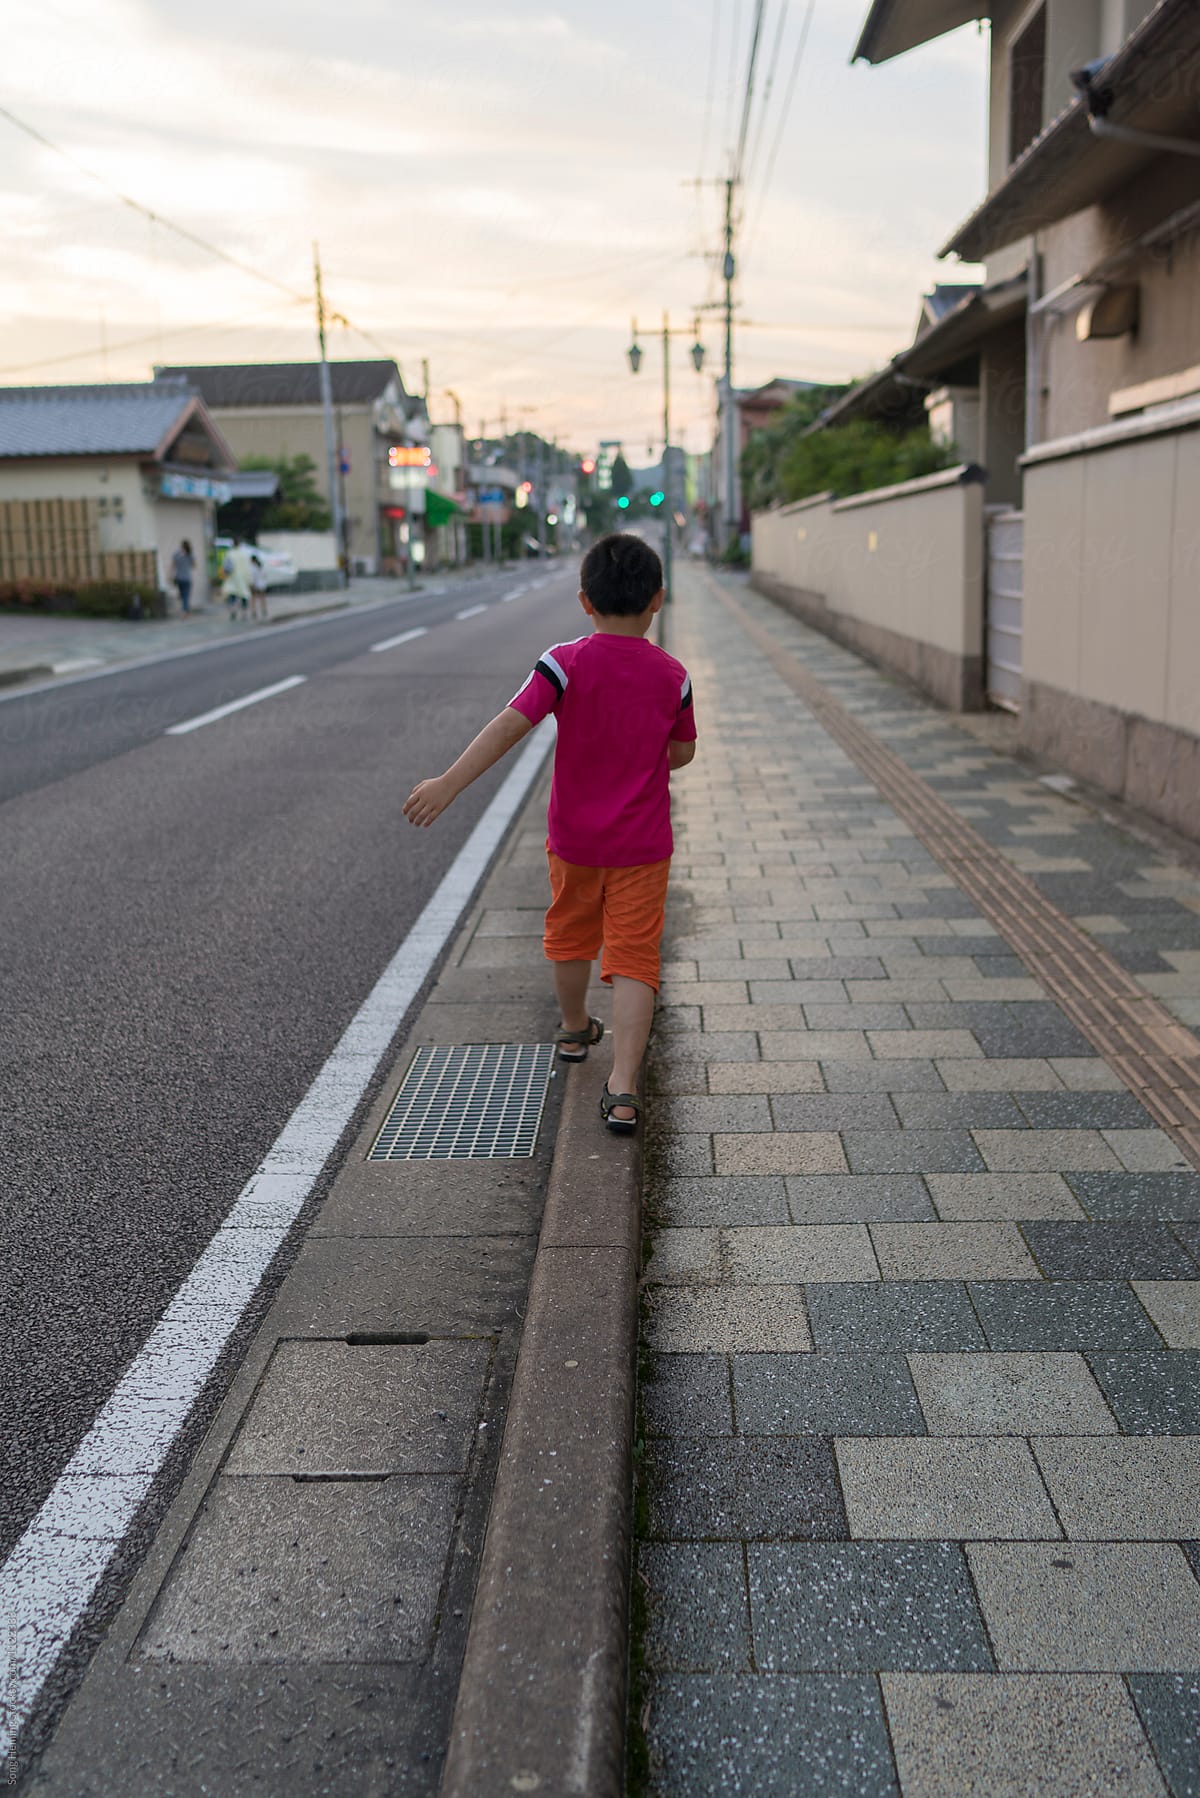 Boy walking in balance on road